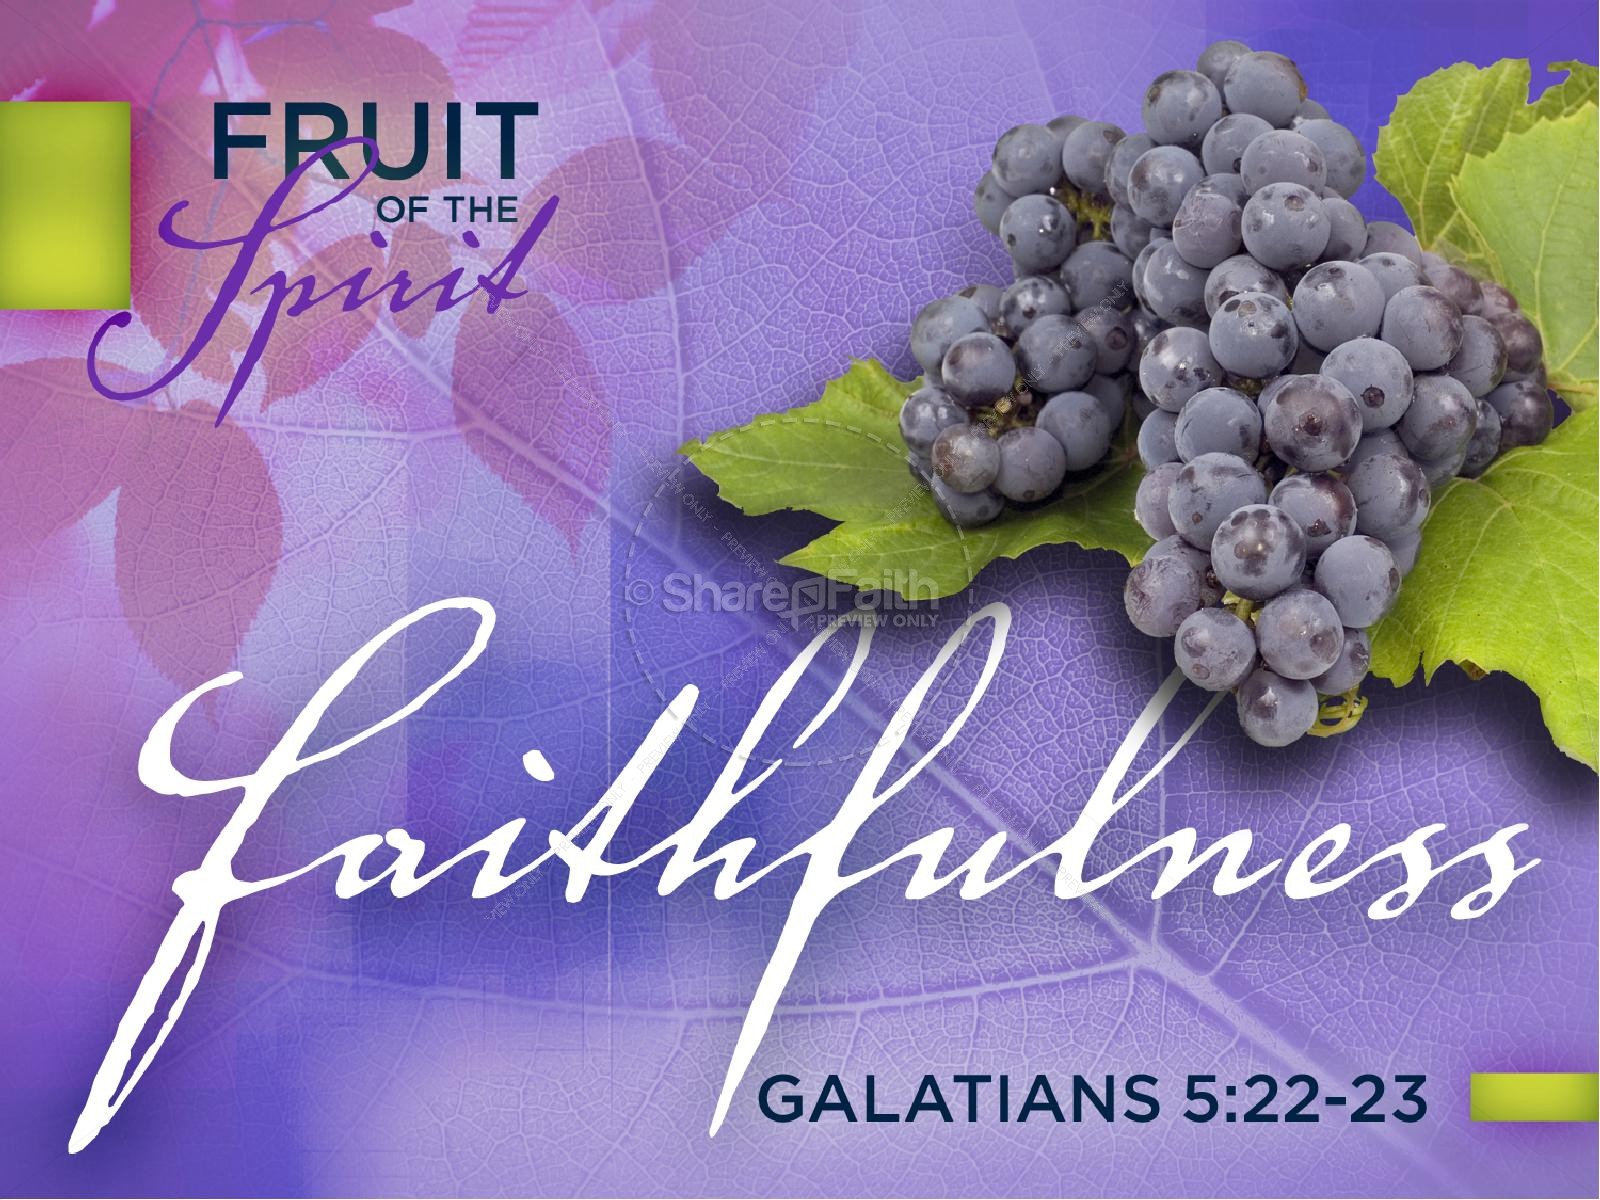 Faithfulness Fruit of The Spirit PowerPoint Thumbnail 1